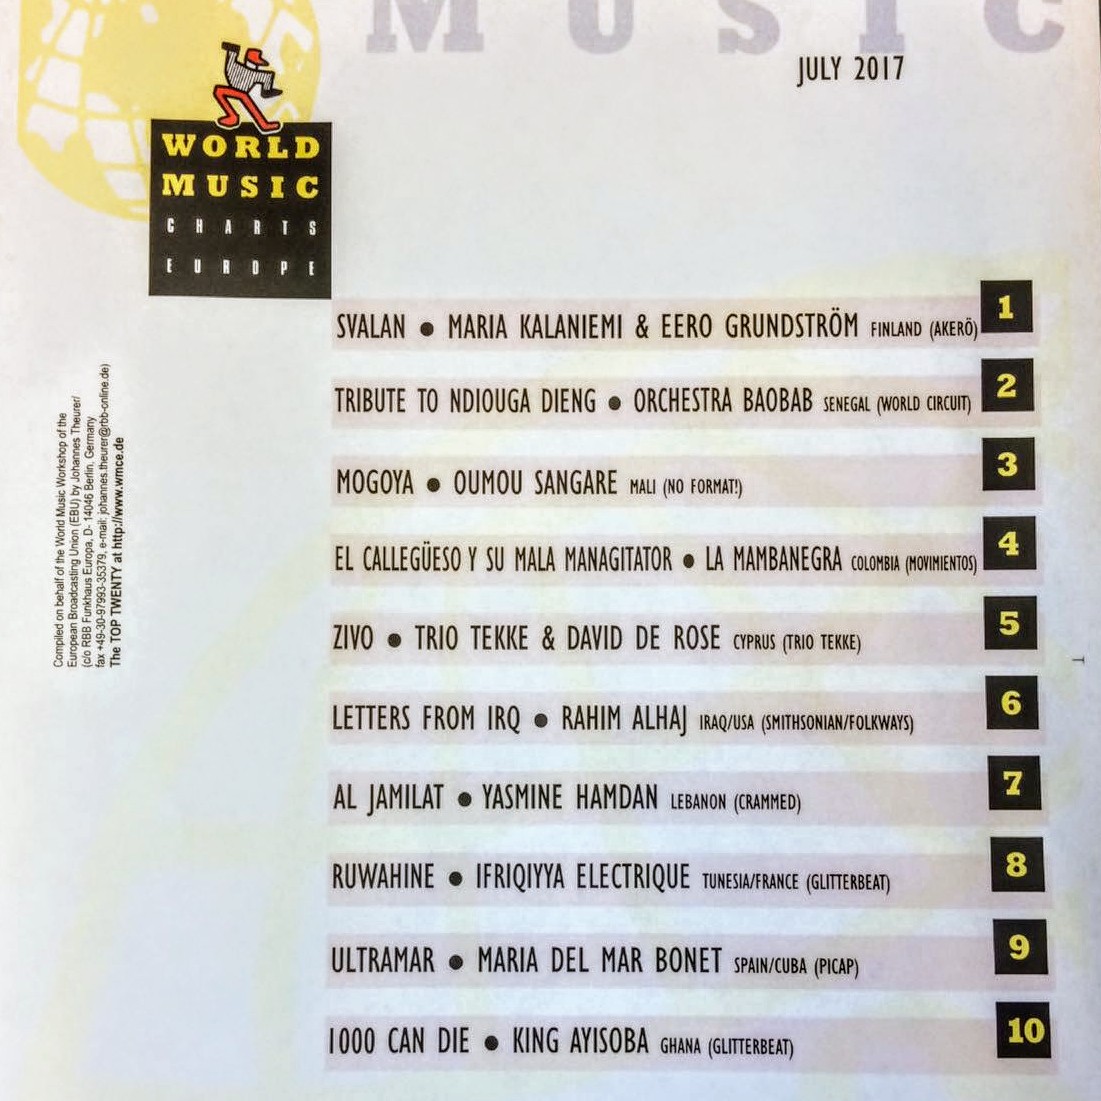 World Music Charts 2017